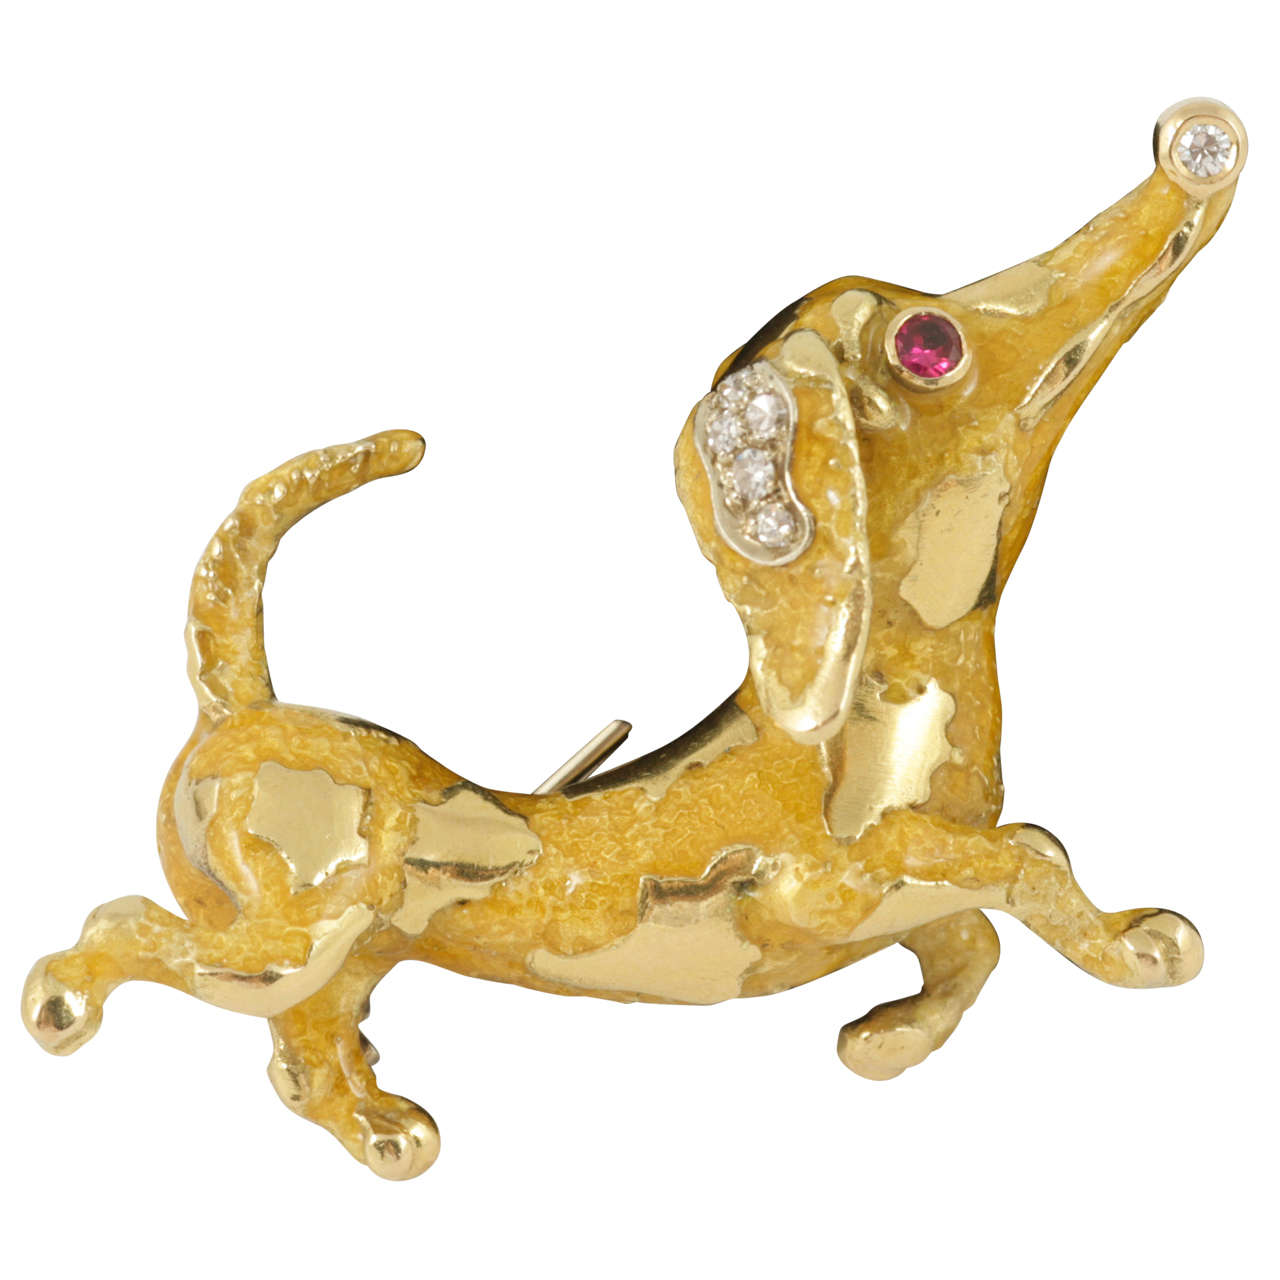 Frascarolo gem set enamel gold dachshund Brooch